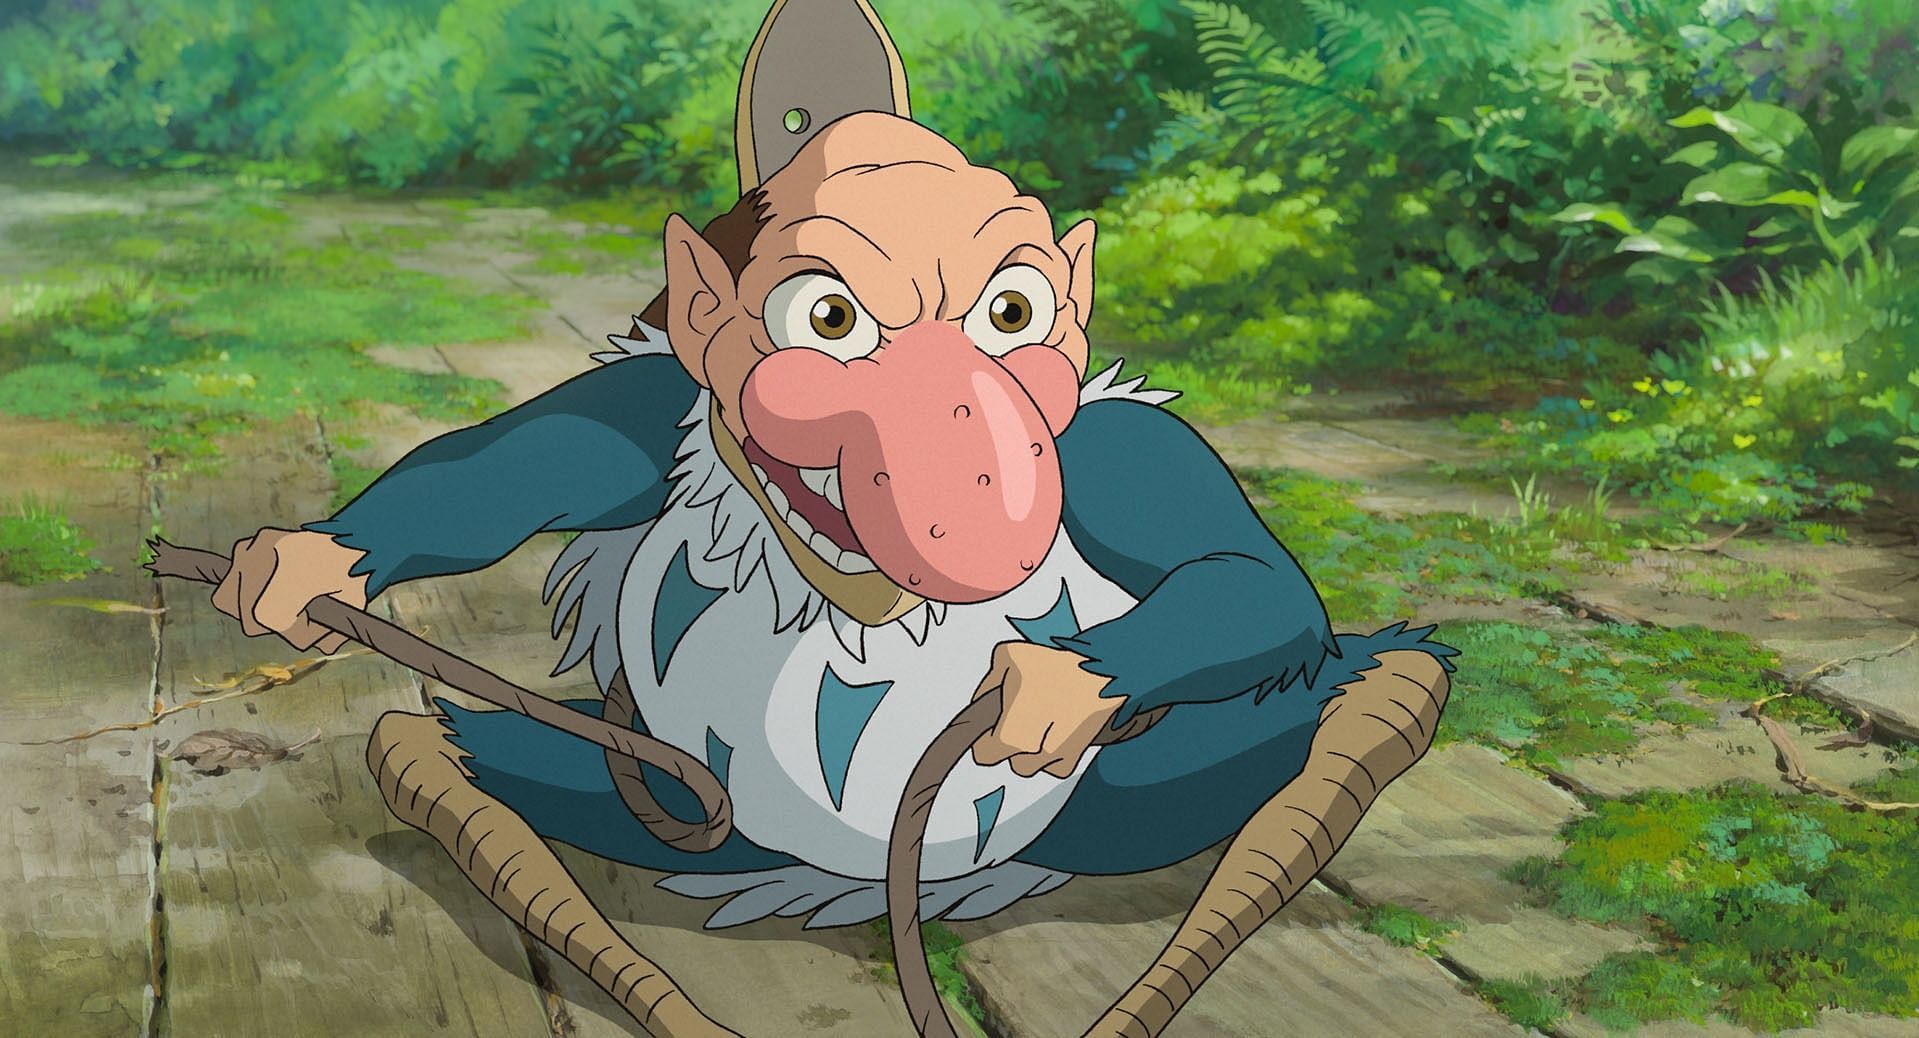 Heron Man as seen in the anime movie (Image via Studio Ghibli)